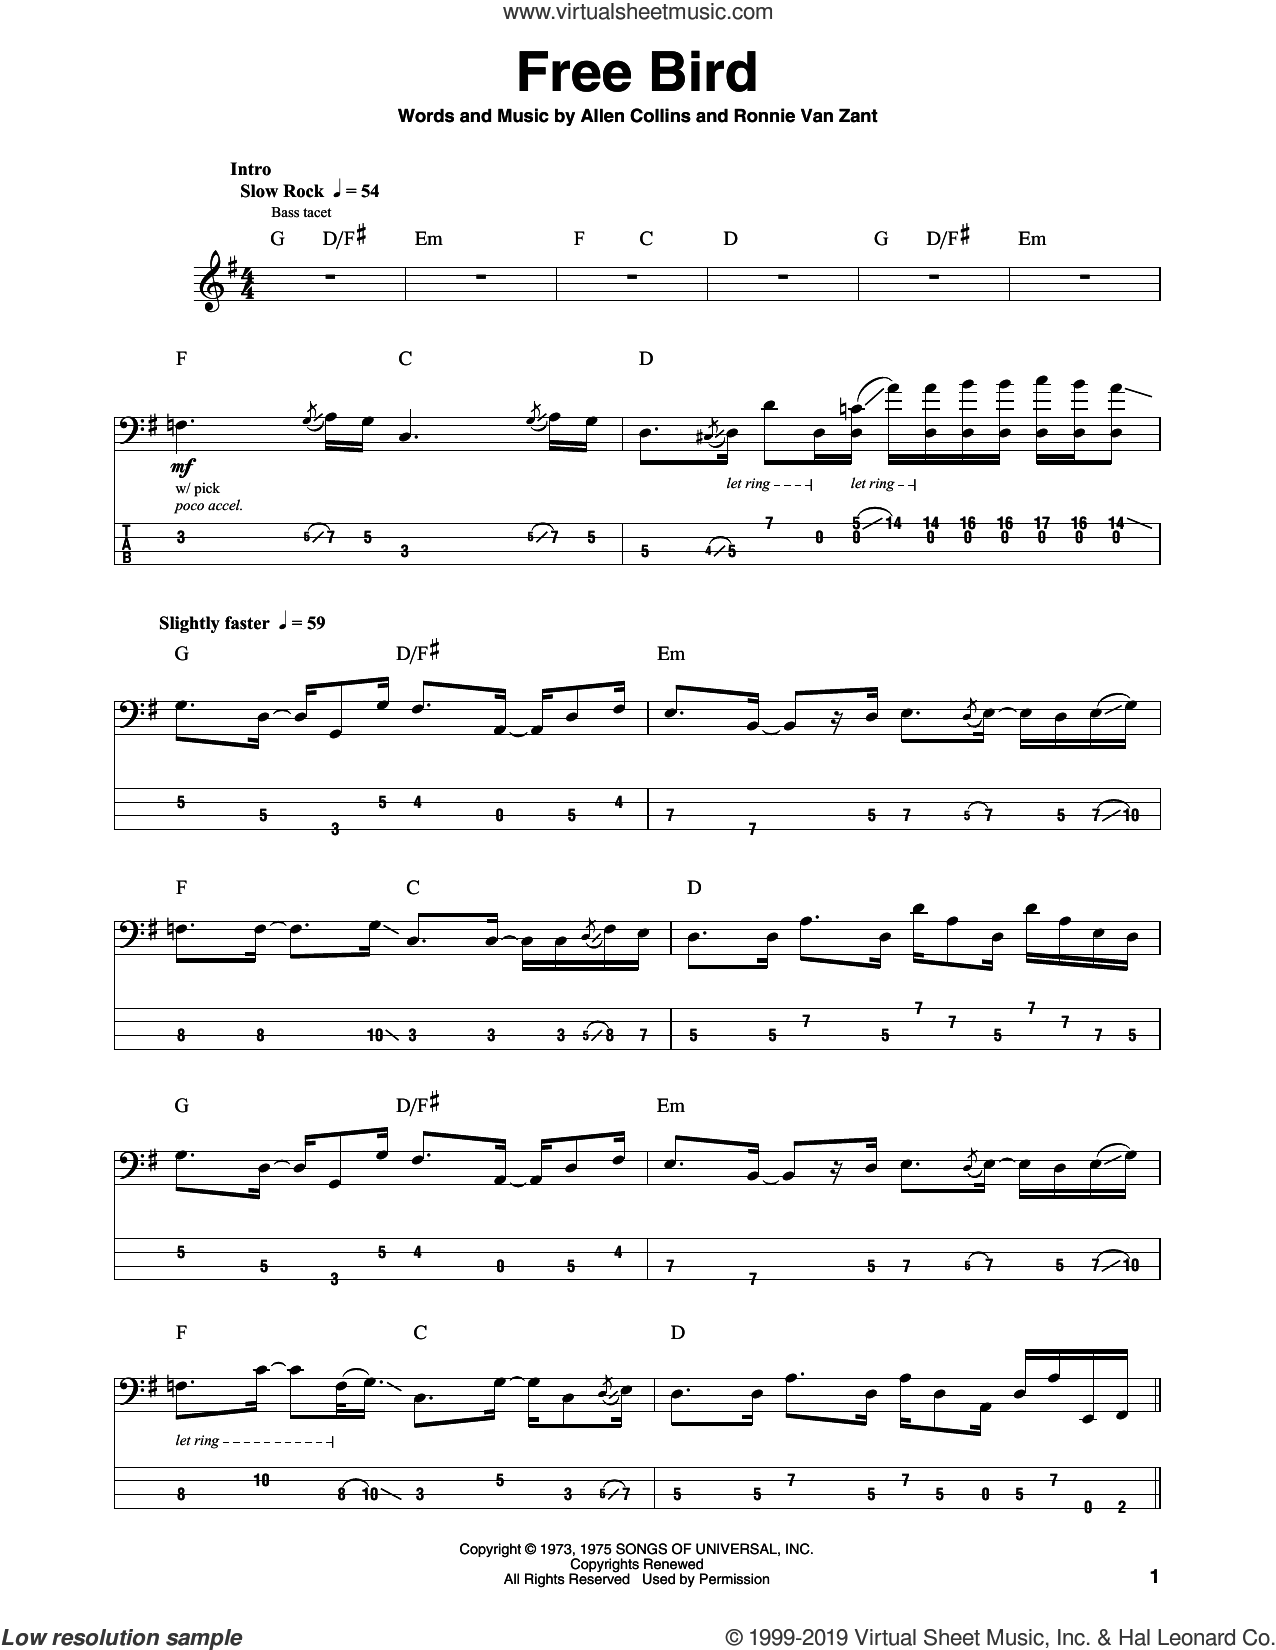 skynyrd-free-bird-sheet-music-for-bass-tablature-bass-guitar-v2